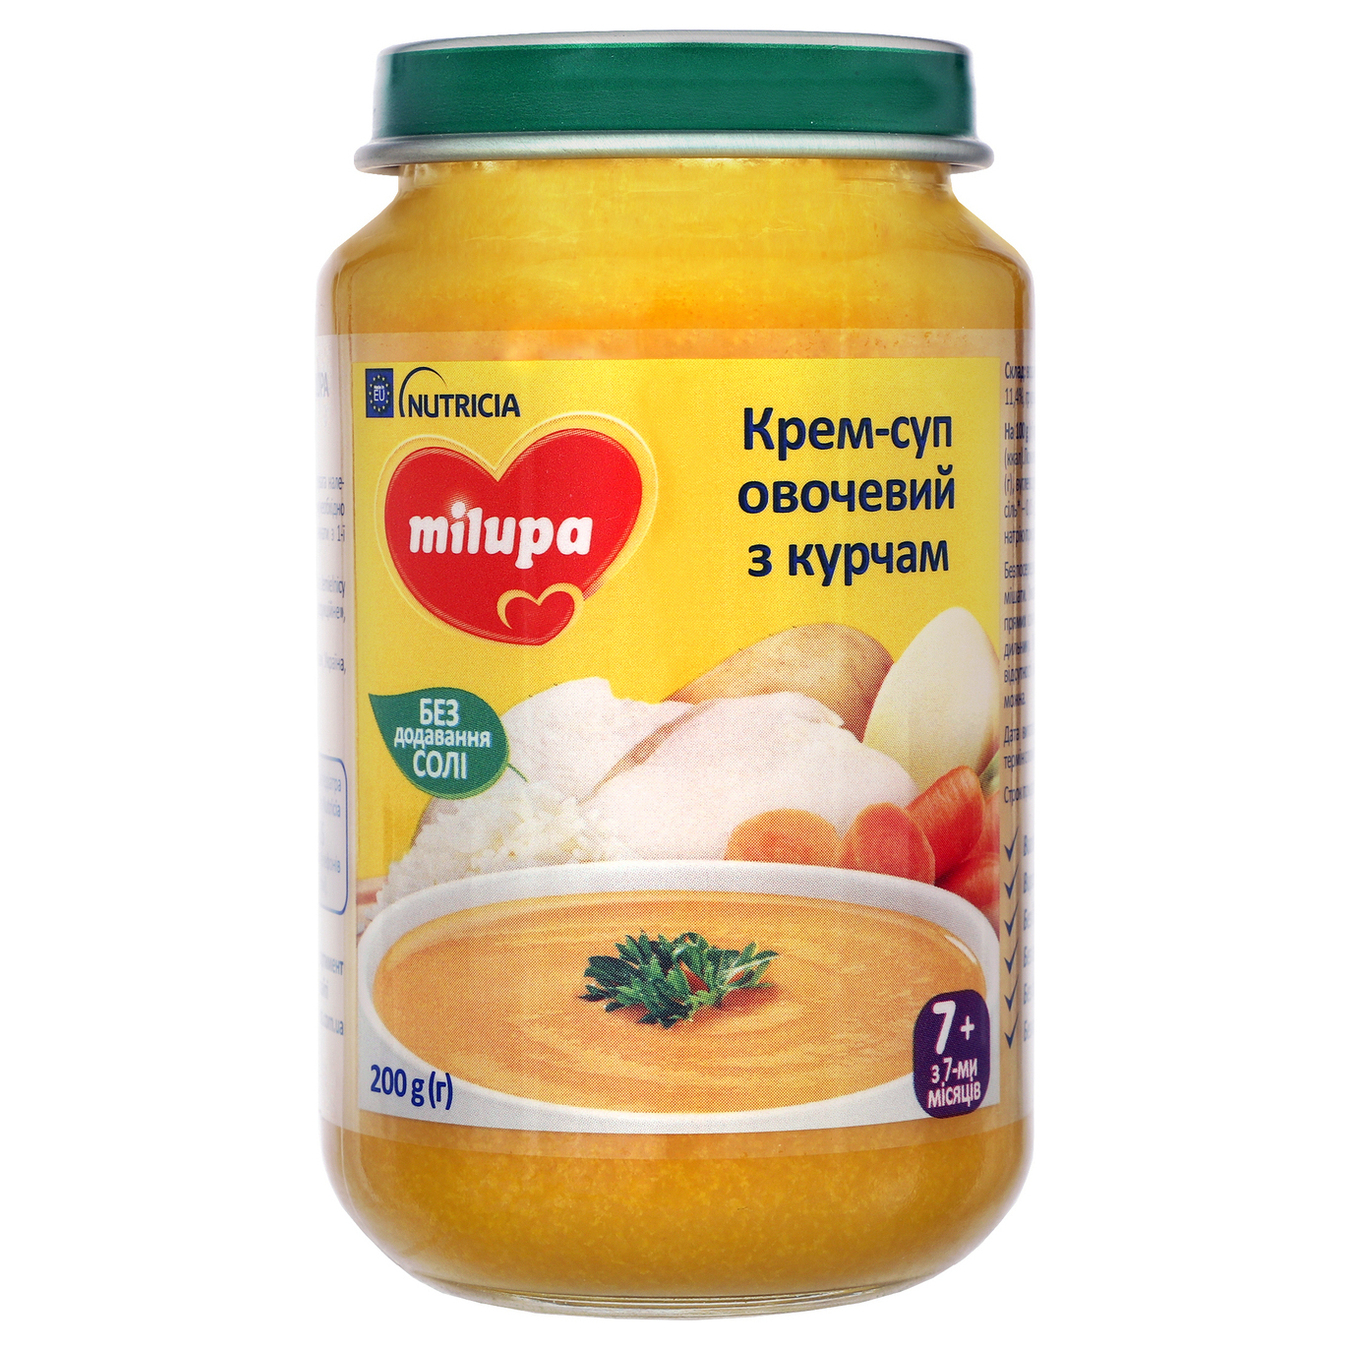 Крем-суп Milupa для дітей від 7-ми місяців овочевий з курчам 200г